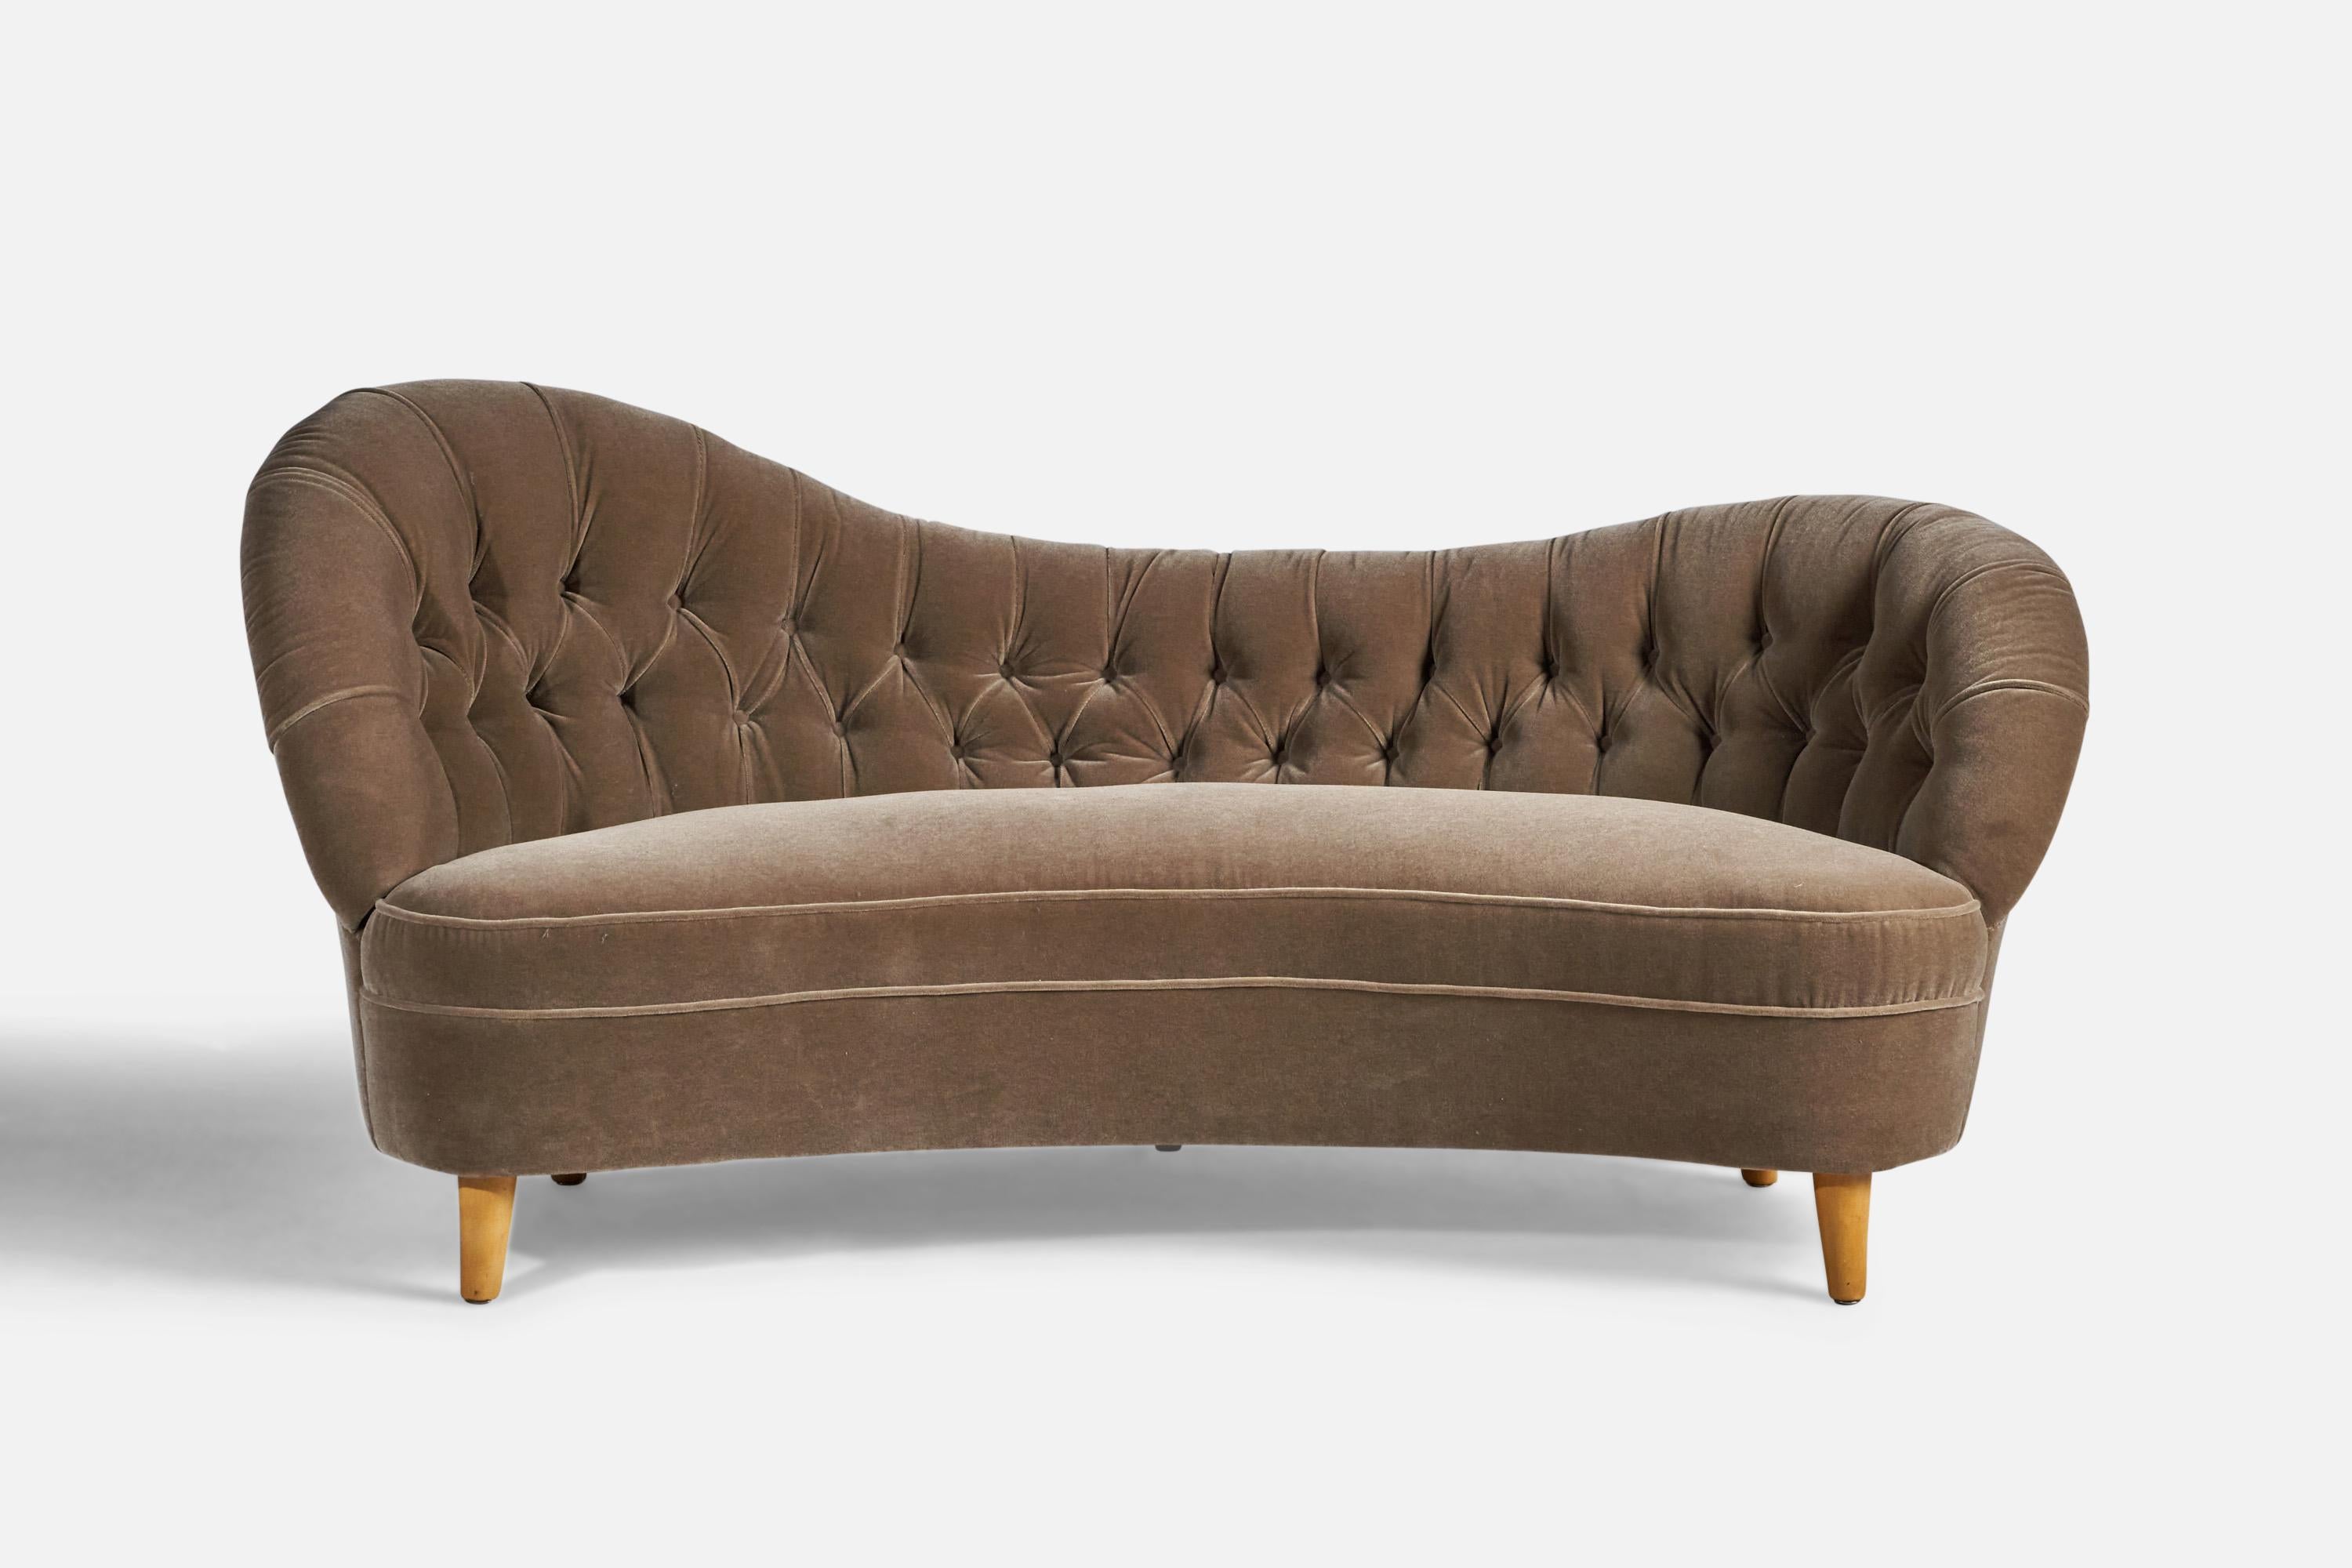 Ein organisches Sofa aus Holz und grauem Mohair, entworfen von Tor Wolfenstein und hergestellt von Ditzingers, Schweden, ca. 1940.

18